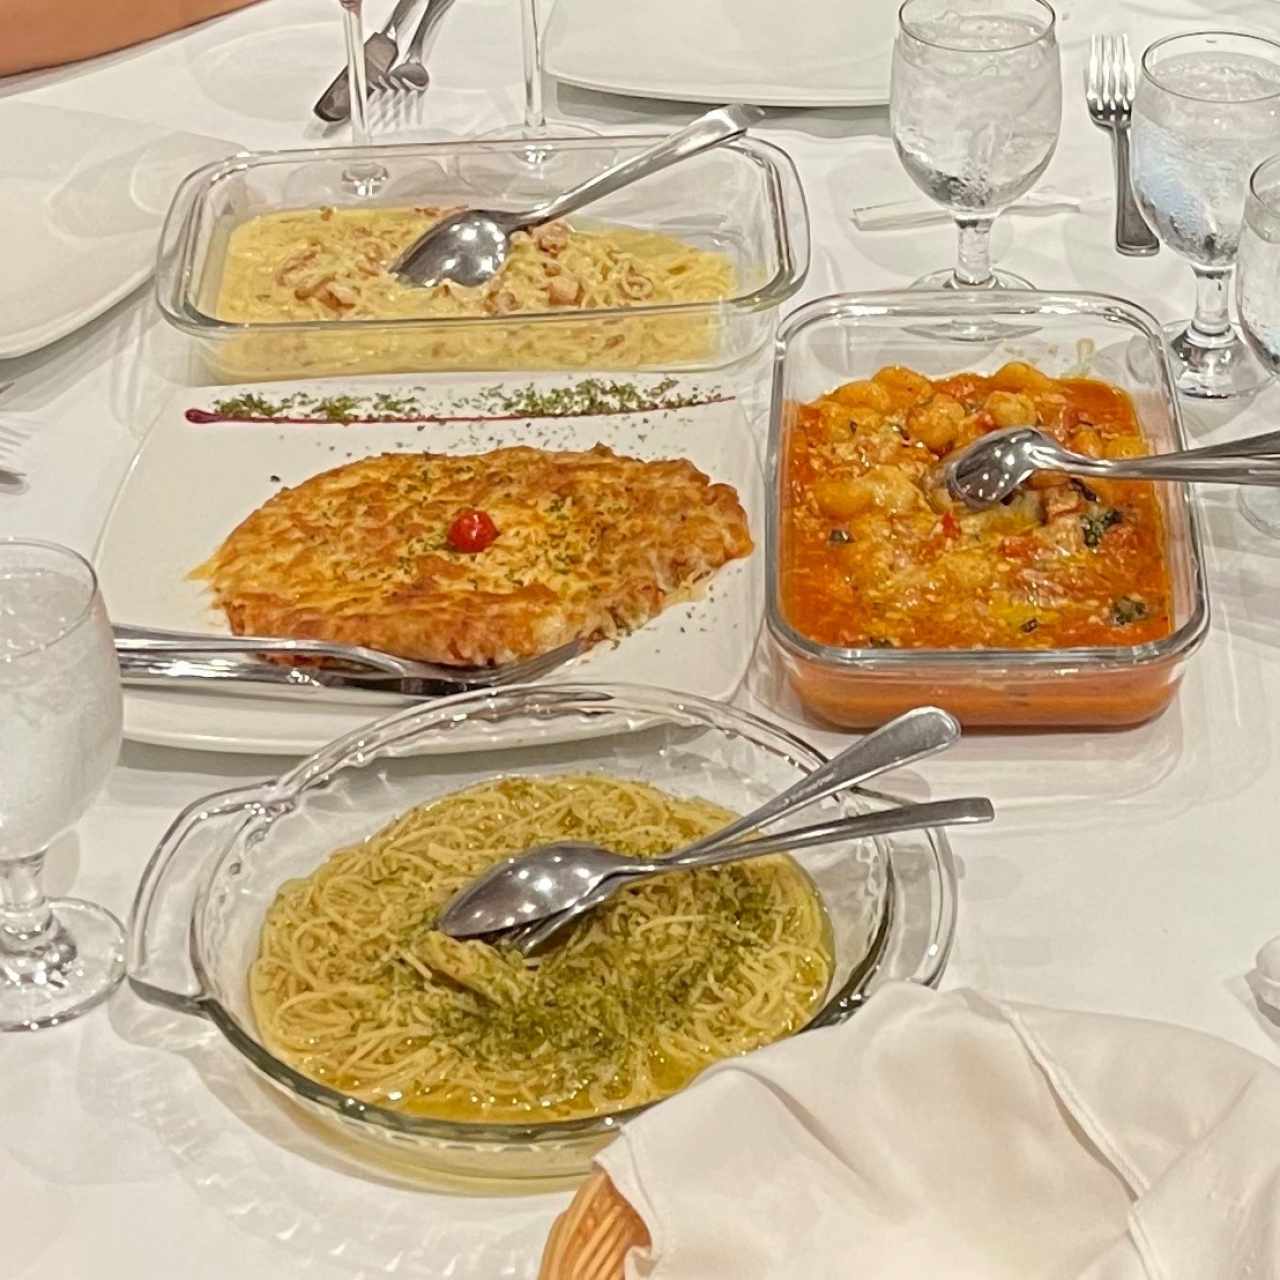 Pasta carbonara, gnocchi en salsa de tomate, milanesa con pasta a’lolio